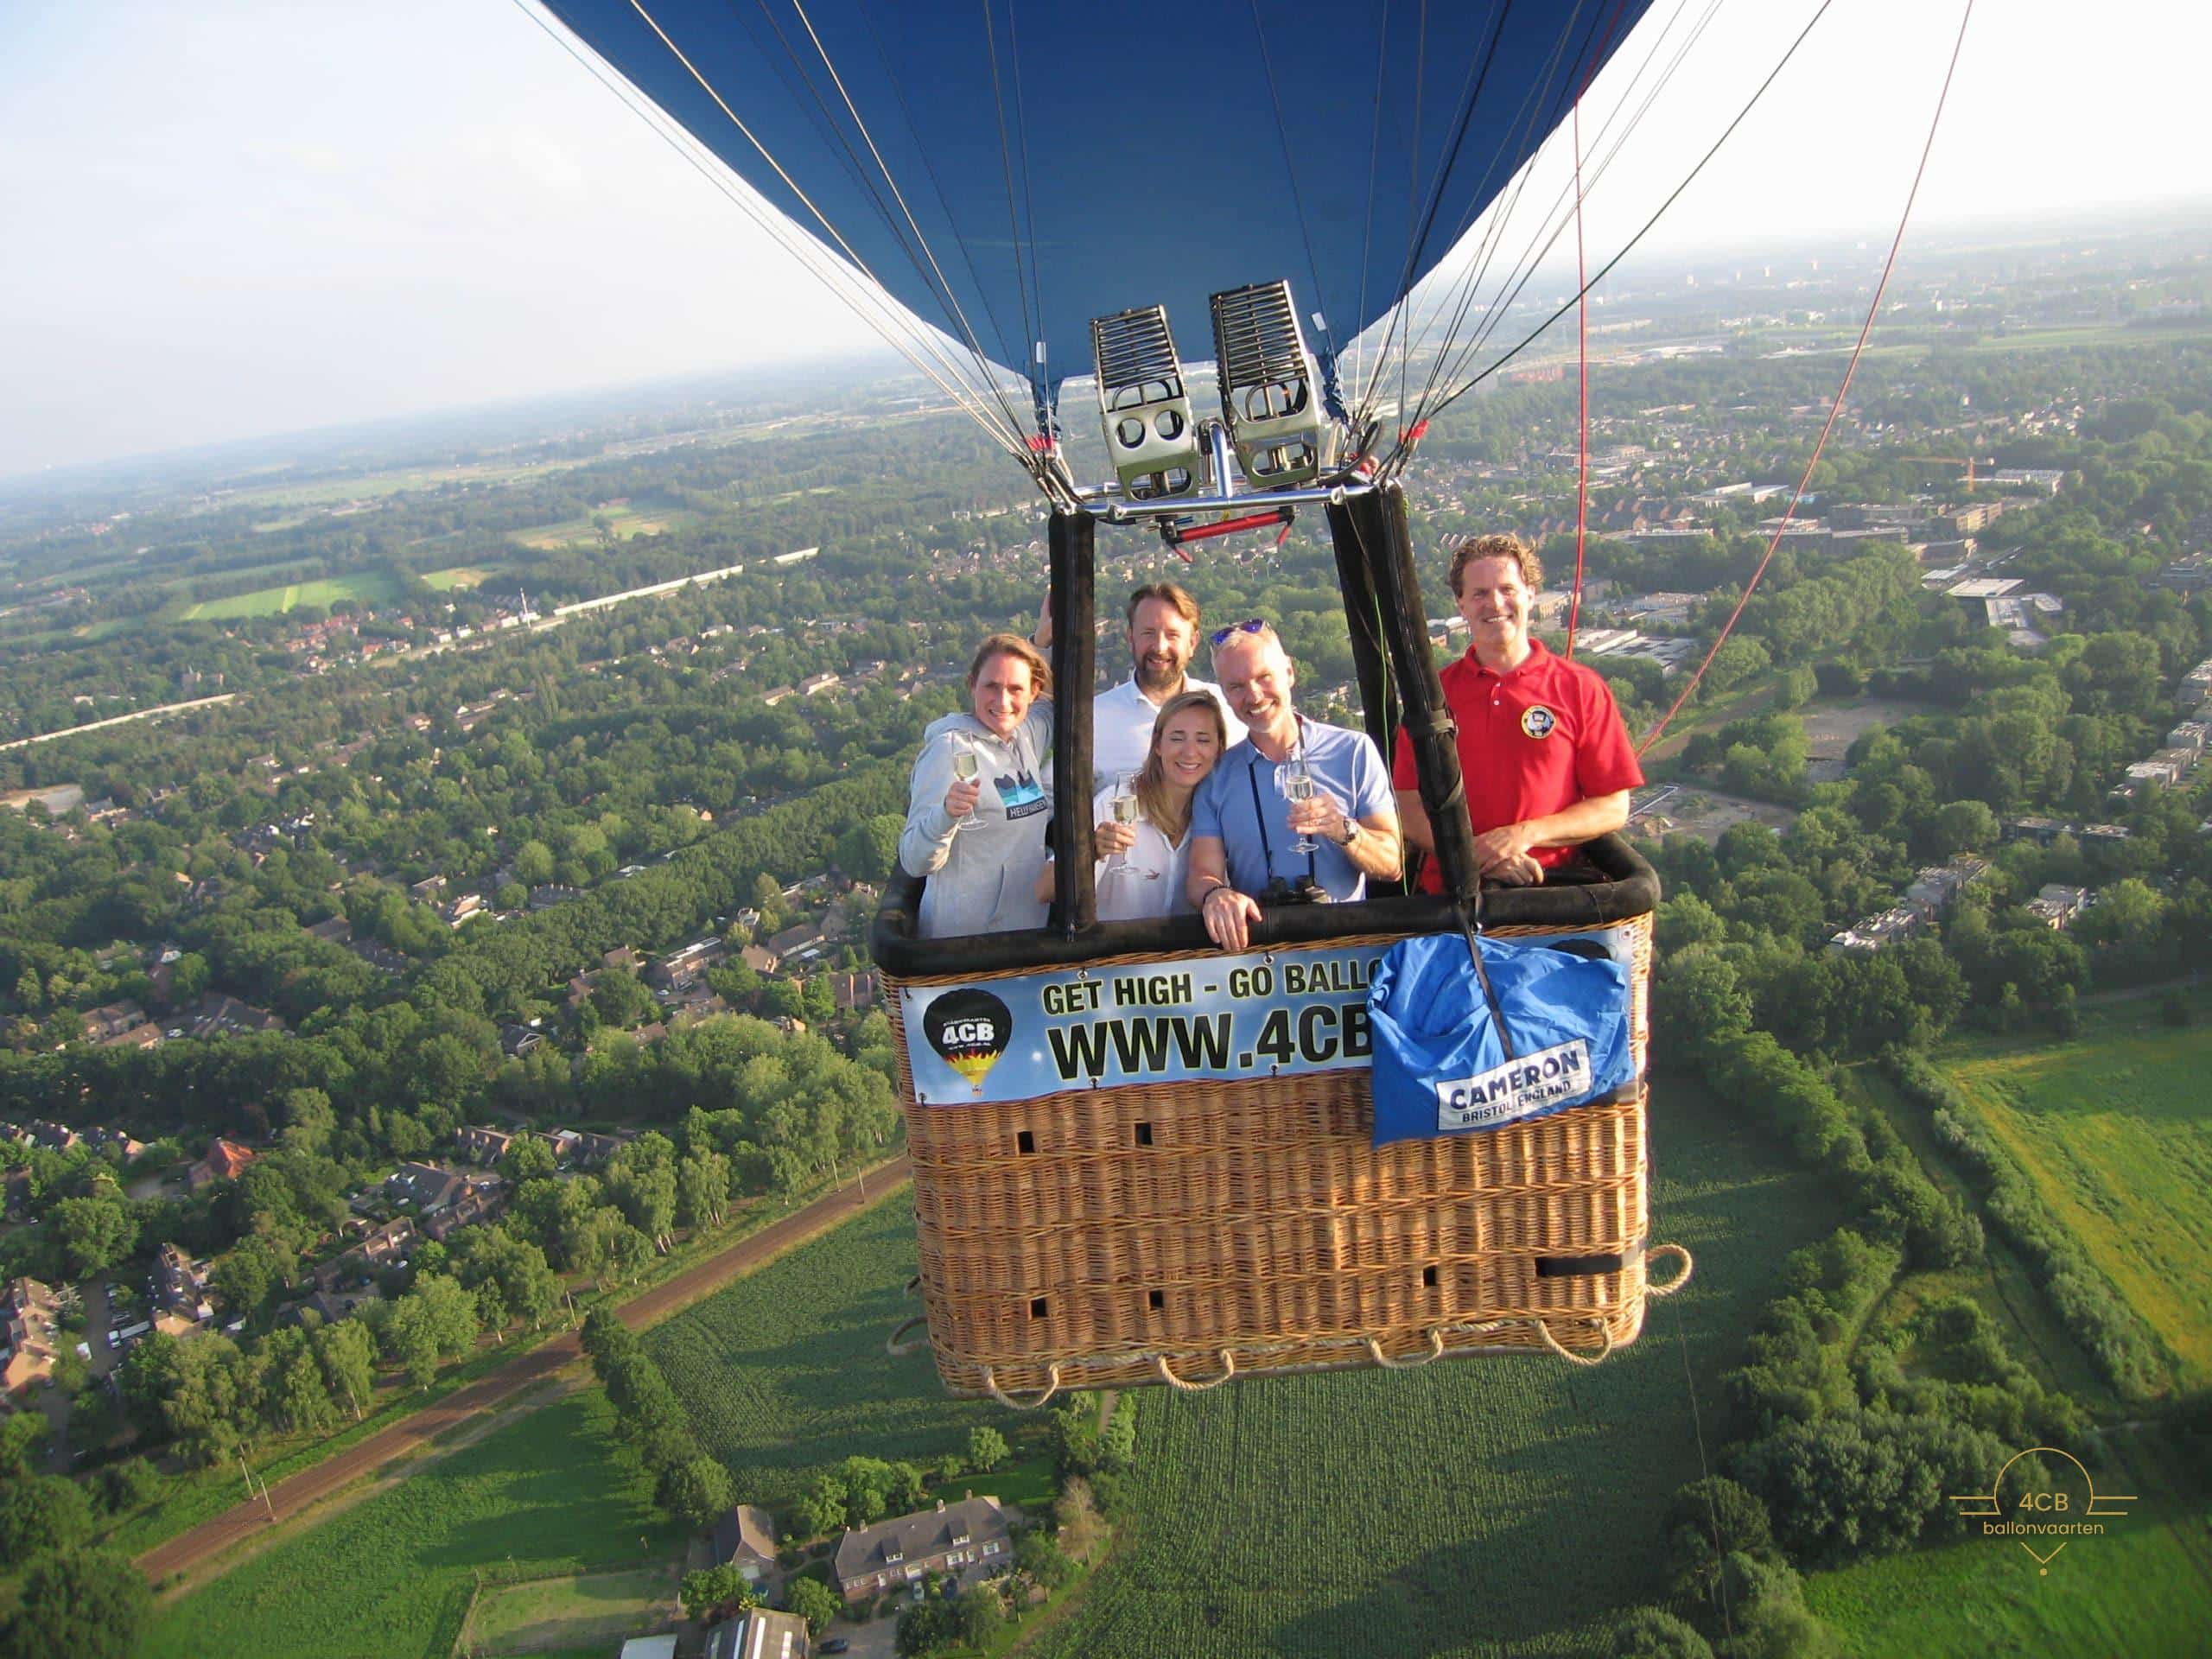 Prive ballonvaart voor 4 personen uit Rosmalen naar Den Bosch